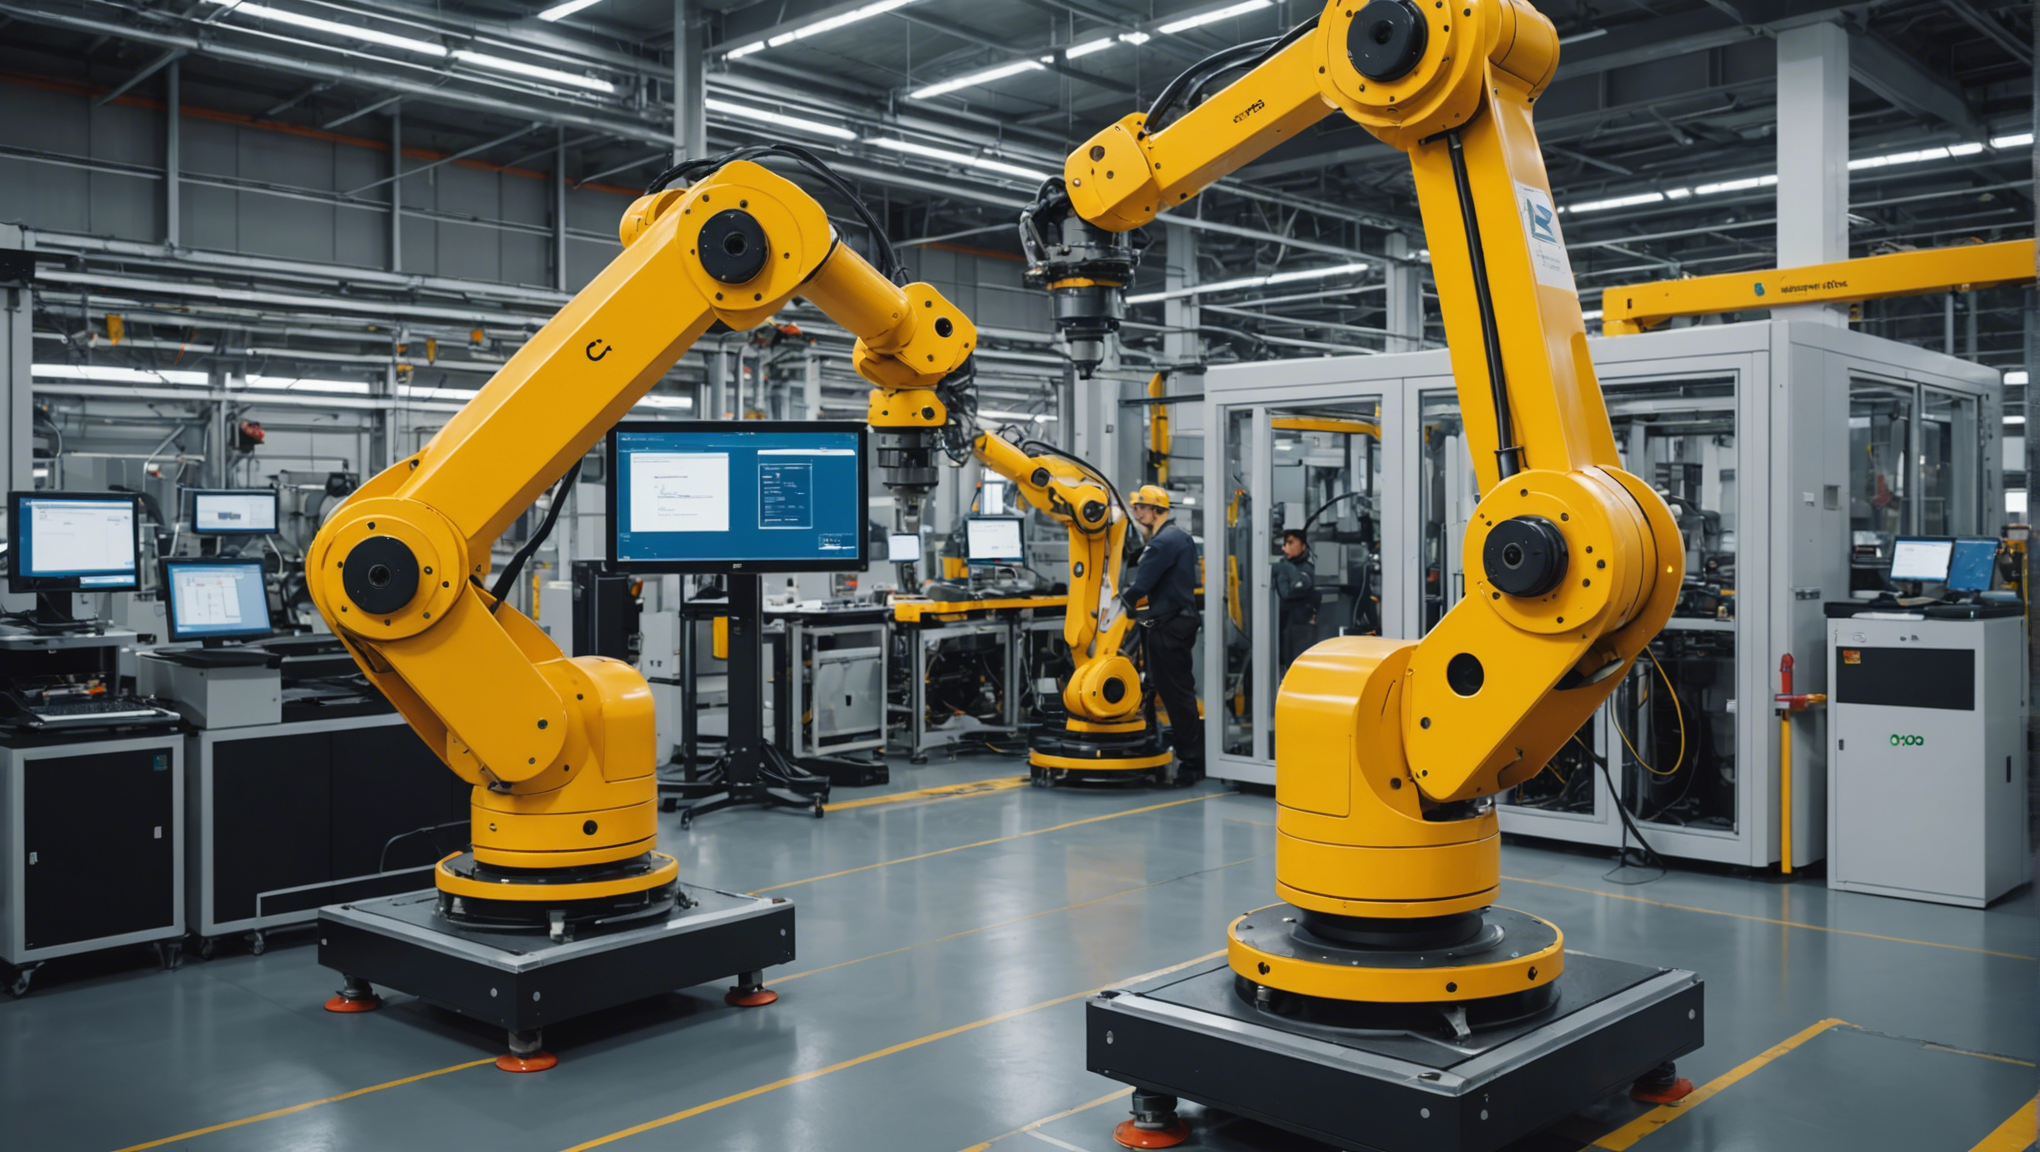 découvrez comment la deuxième vague d'automatisation transforme l'industrie avec l'essor des robots industriels. impact, enjeux et innovations à la une.